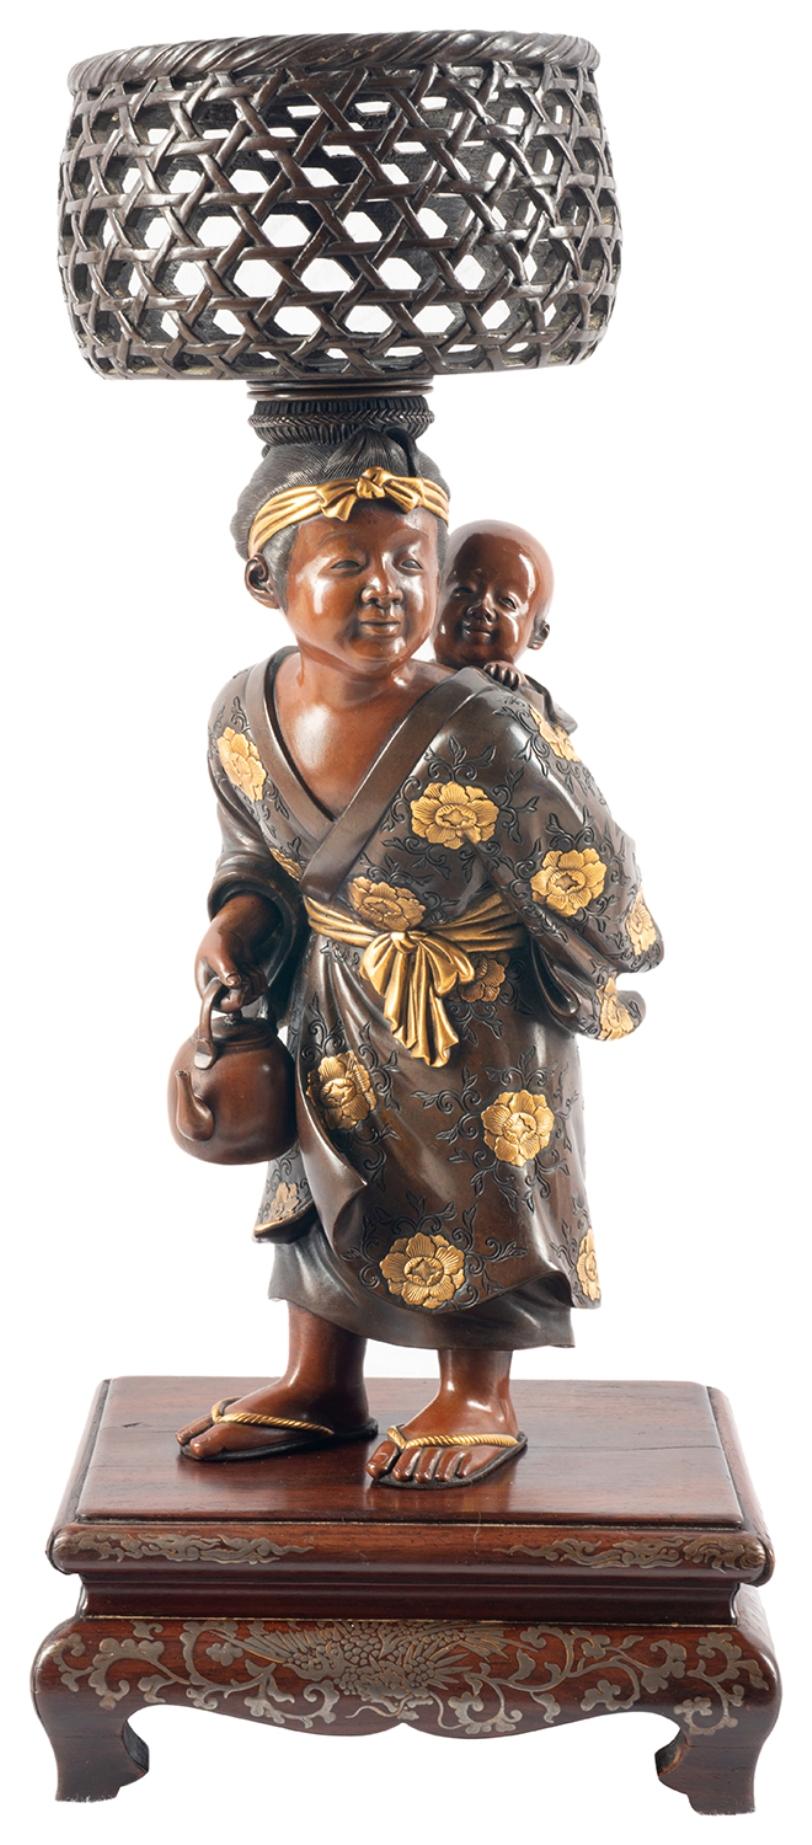 Ein hochwertiges Paar japanischer Miyao-Bronzefiguren aus der Meiji-Zeit (1868-1912), die eine Mutter darstellen, die ihr Kind mit einem Weidenkorb auf dem Kopf trägt und dabei einen Wasserkessel hält, sowie einen Mann, der versucht, einen